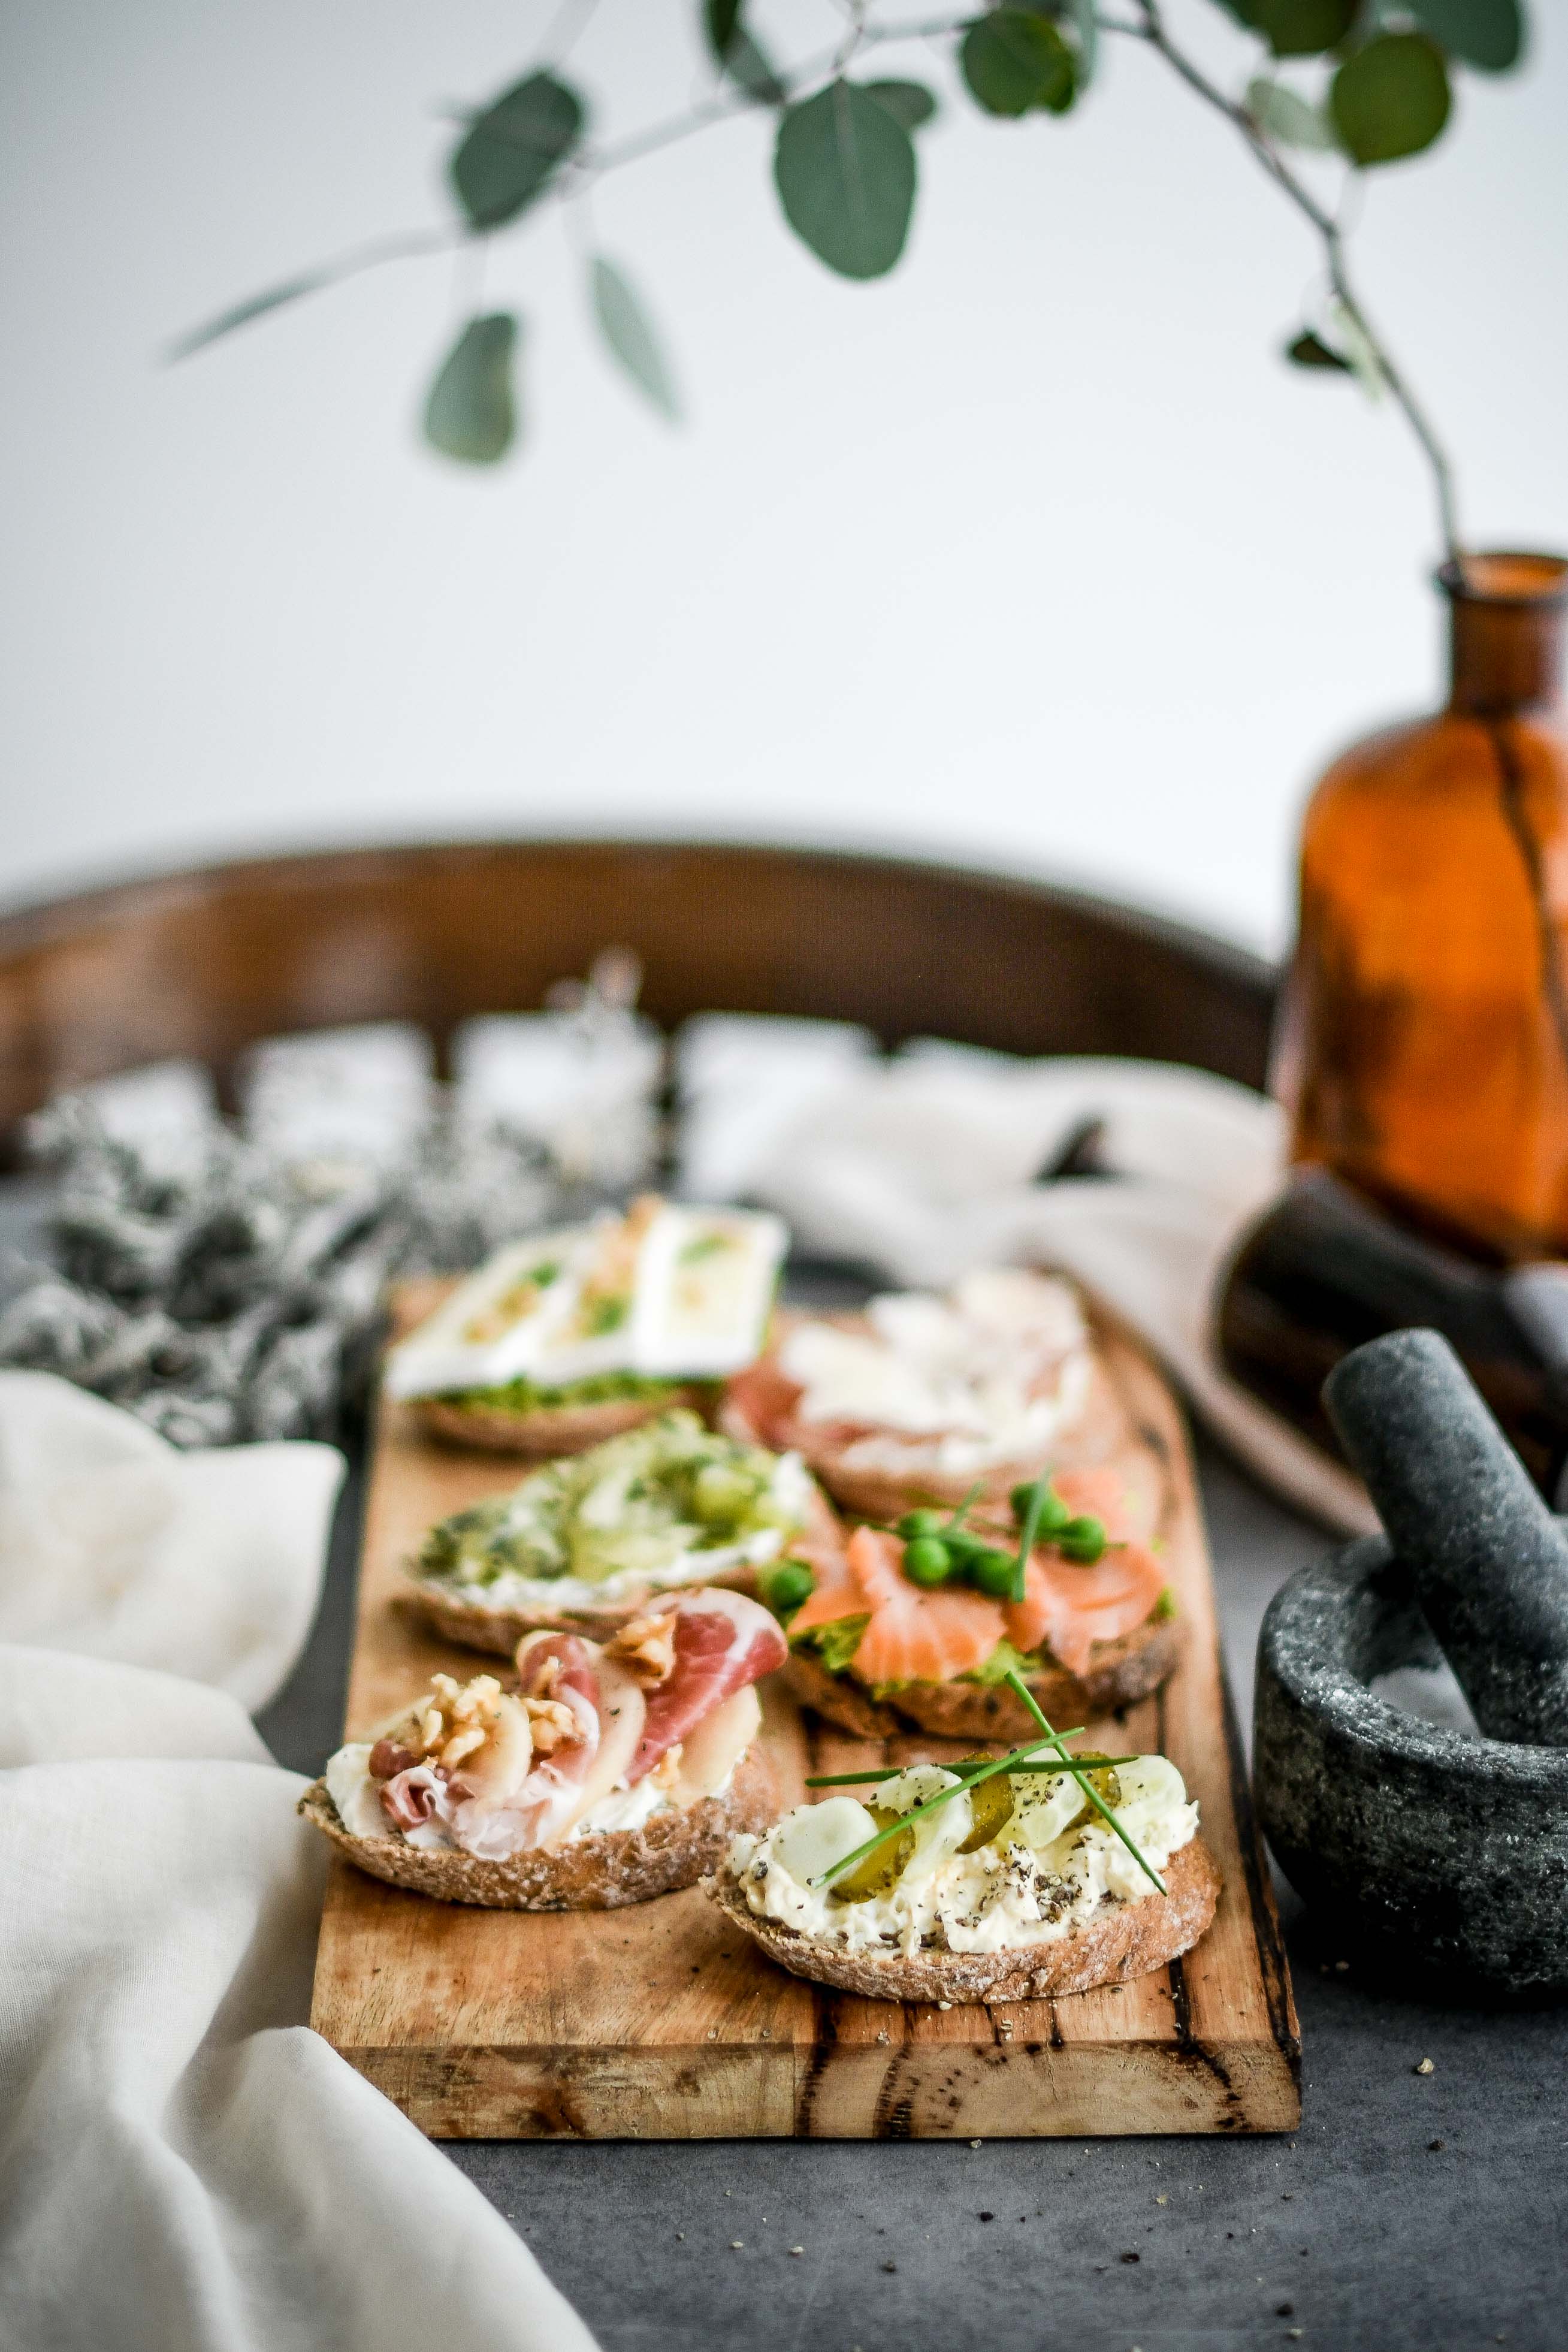 open sandwiches / obložené chlebíky photography